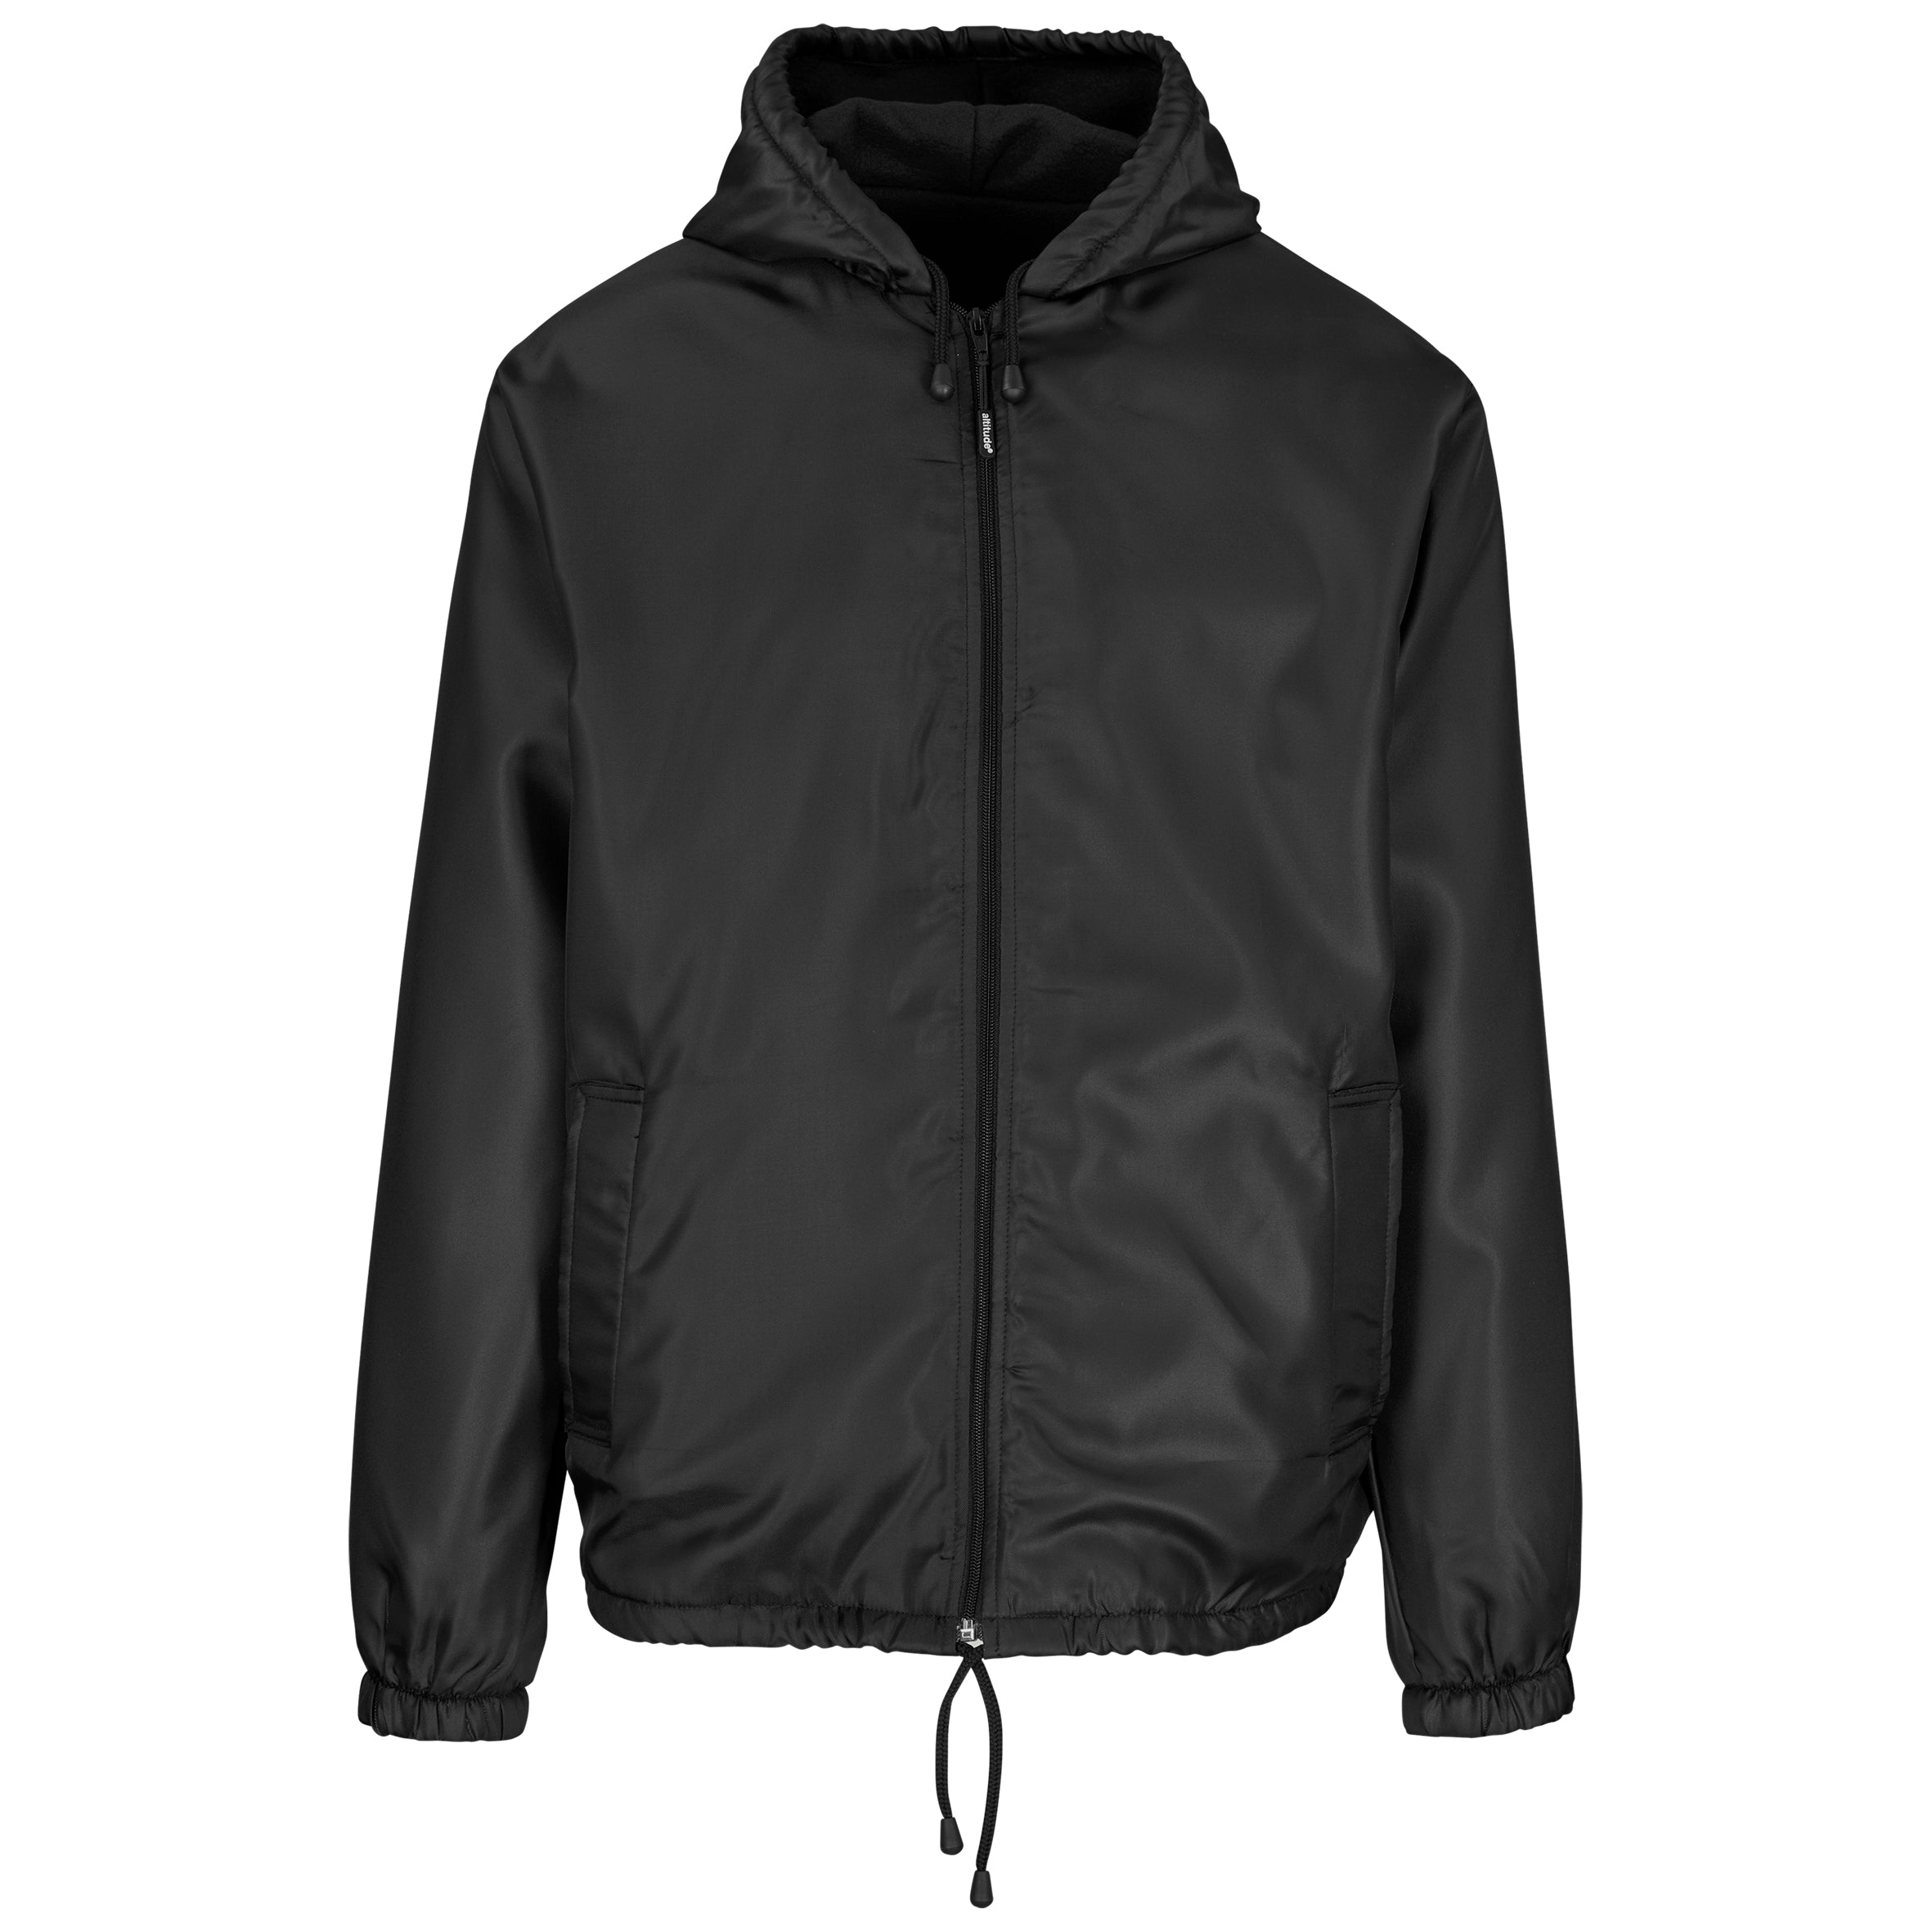 Unisex Alti-Mac Fleece Lined Jacket L / Black / BL